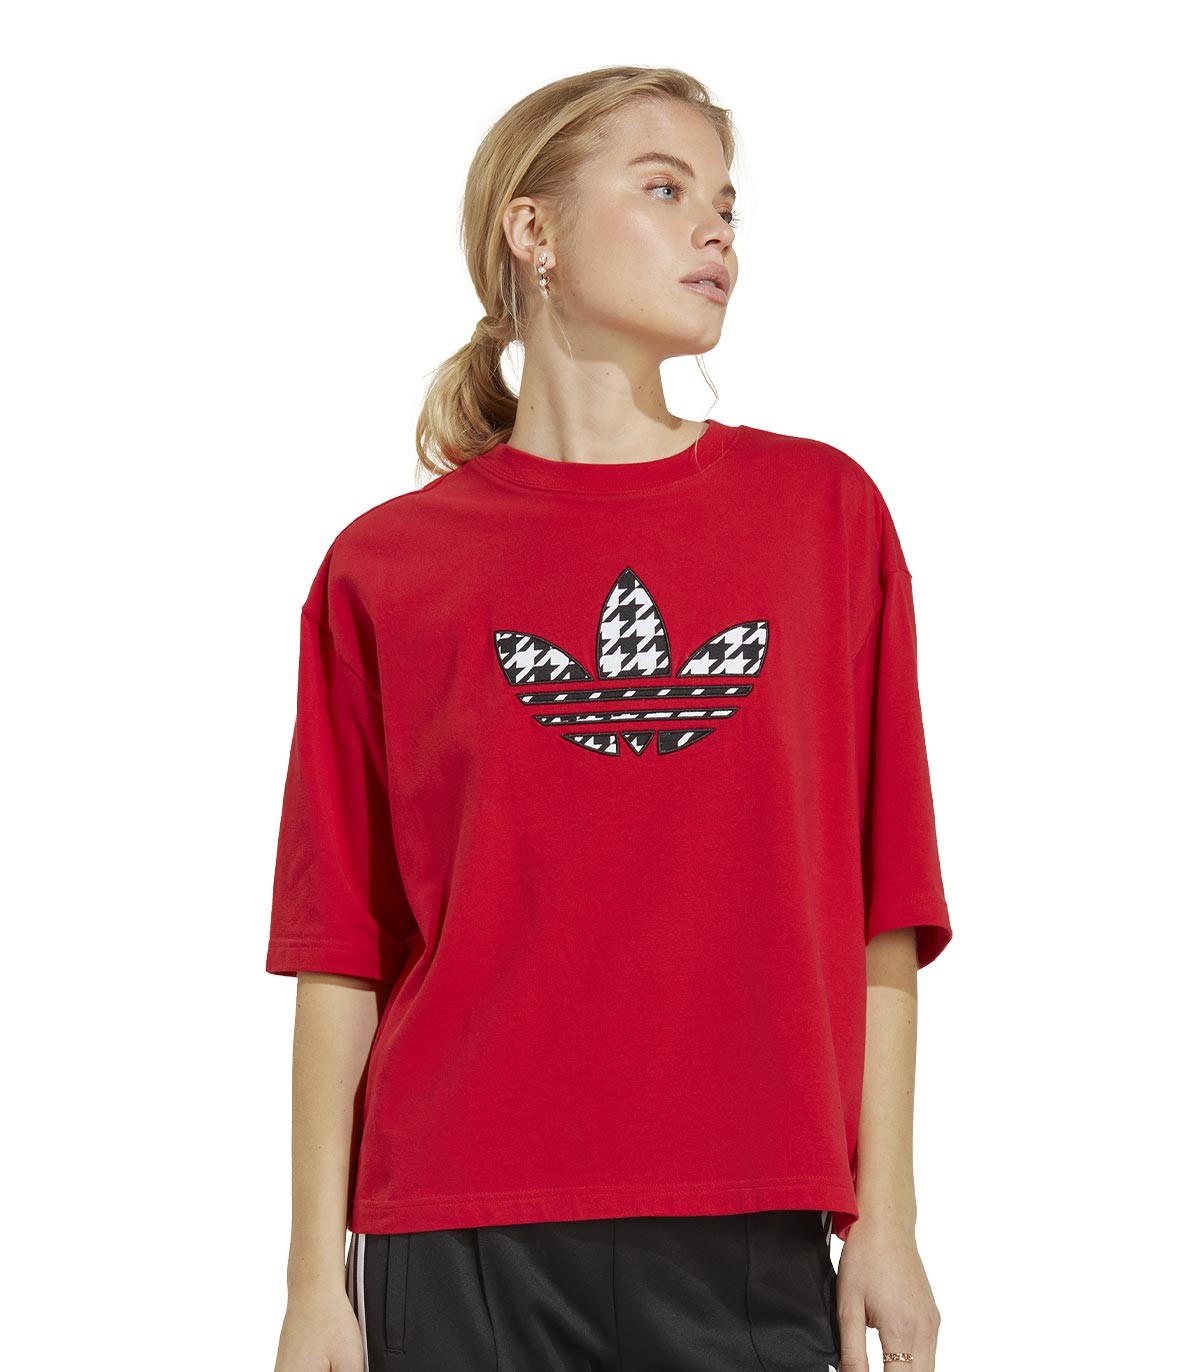 adidas - Camiseta Trefoil Infill - Rojo